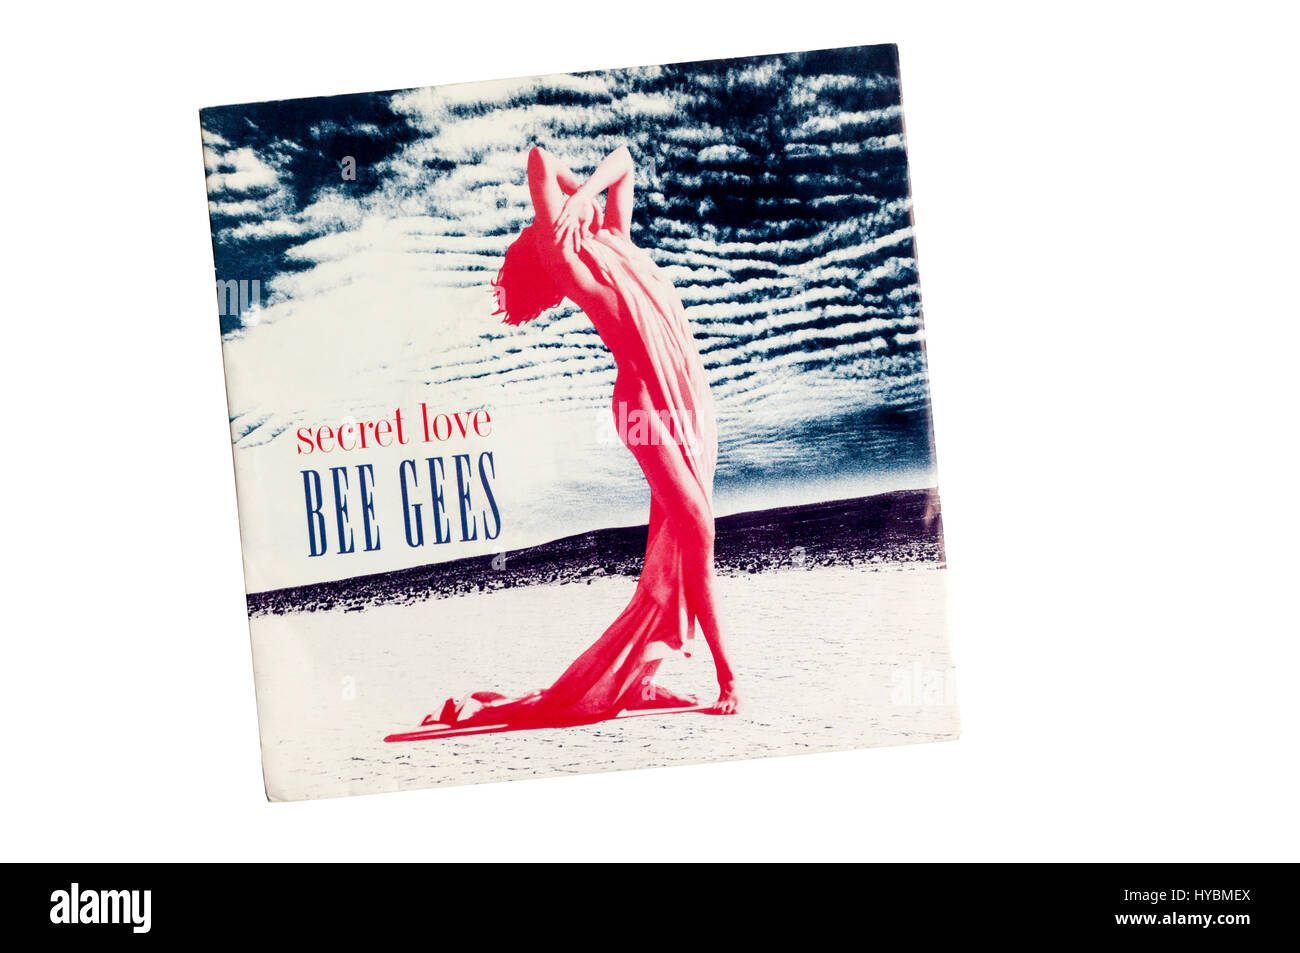 Amour secret était un seul par groupe anglais Bee Gees de leur album de haute civilisation. Il a été publié en 1991. Banque D'Images